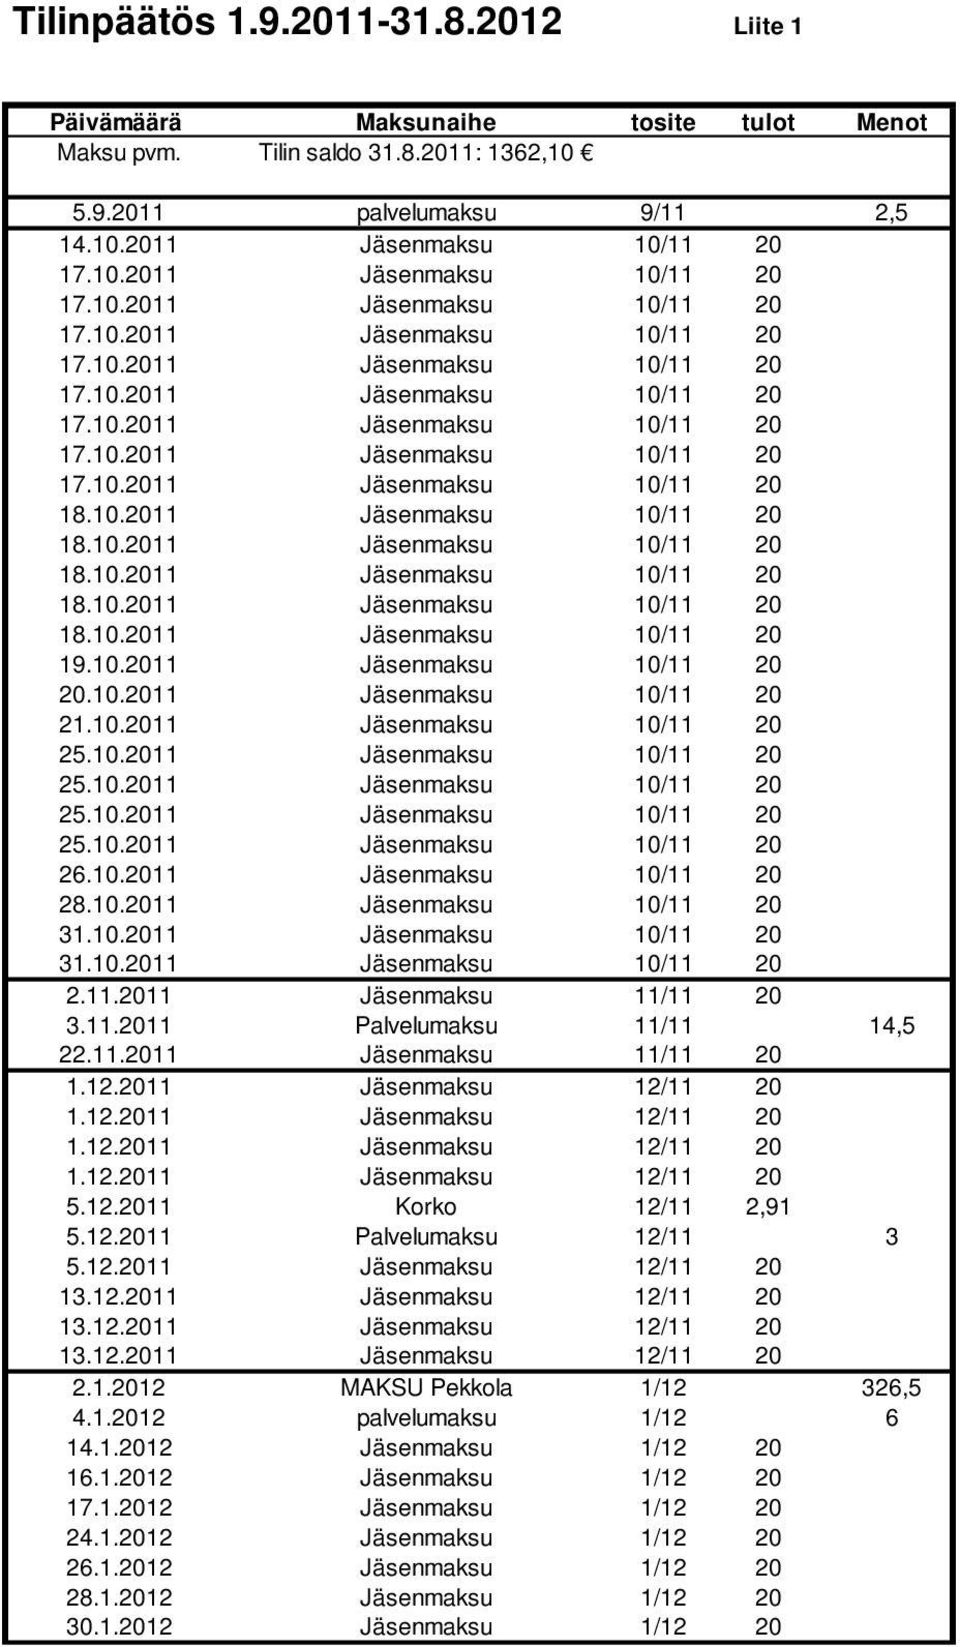 11.2011 Palvelumaksu 11/11 14,5 22.11.2011 Jäsenmaksu 11/11 20 5.12.2011 Korko 12/11 2,91 5.12.2011 Palvelumaksu 12/11 3 5.12.2011 Jäsenmaksu 12/11 20 13.12.2011 Jäsenmaksu 12/11 20 13.12.2011 Jäsenmaksu 12/11 20 13.12.2011 Jäsenmaksu 12/11 20 2.